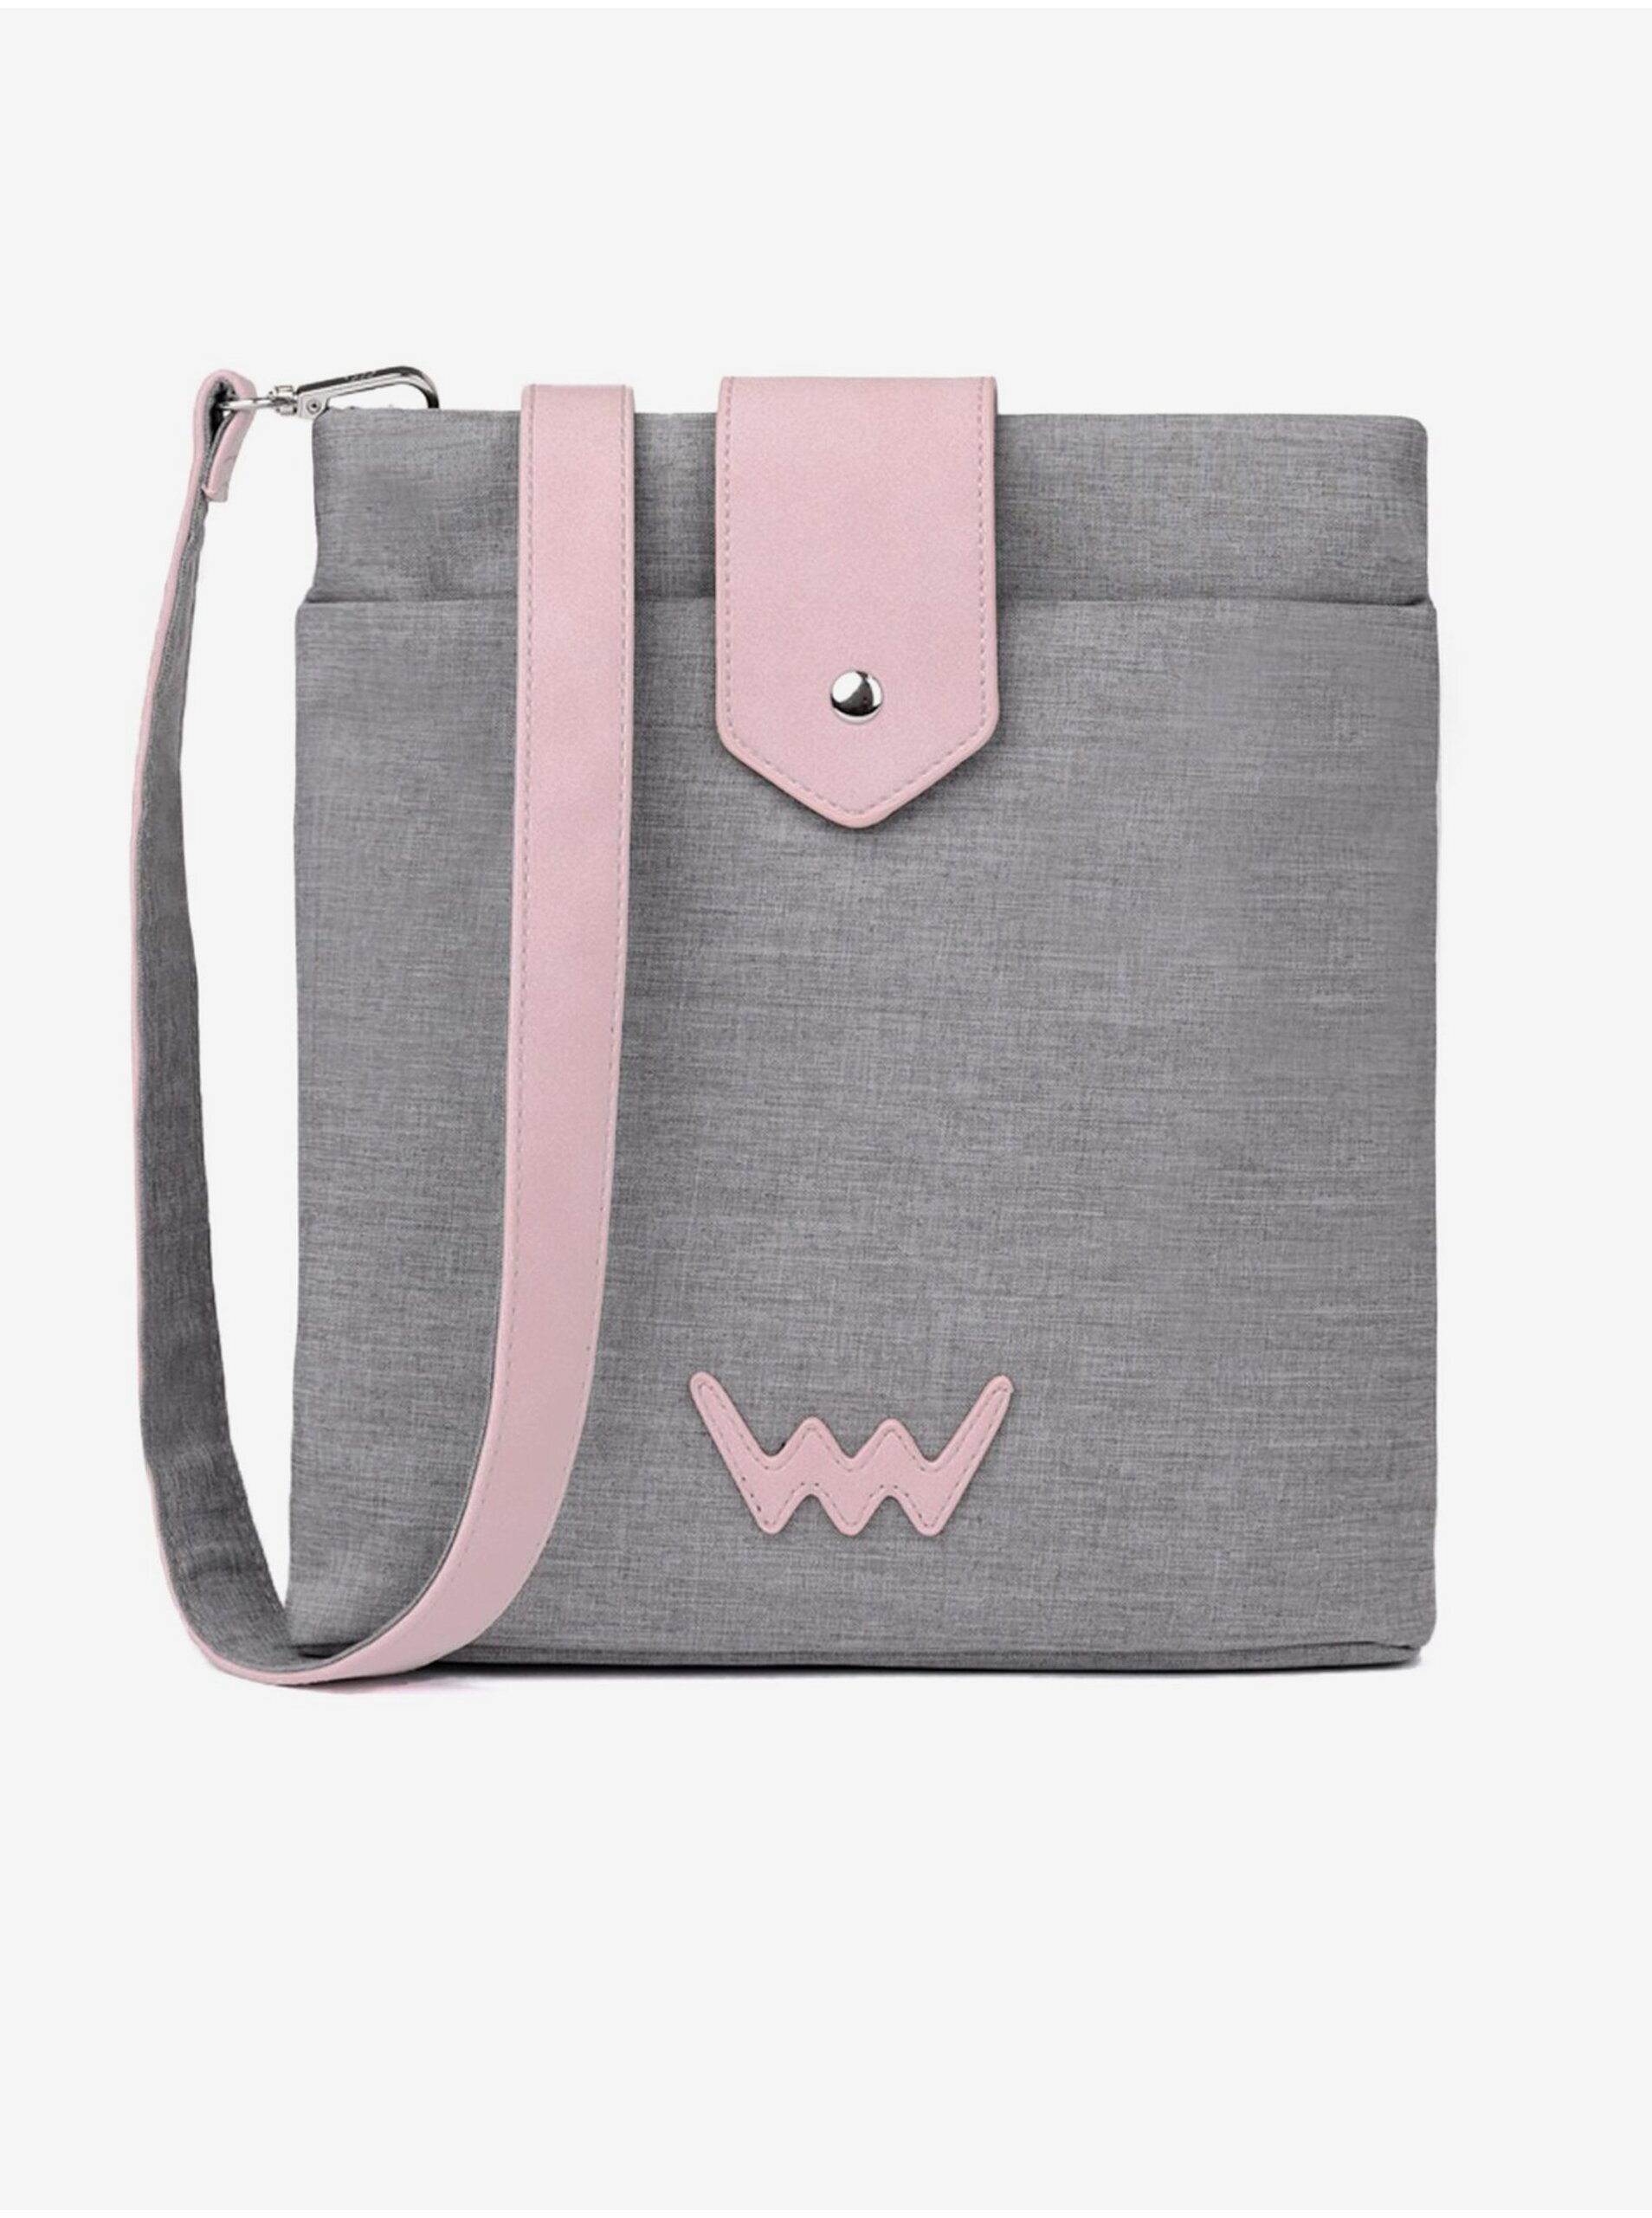 E-shop Ružovo-šedá dámska kabelka VUCH Vigo Grey